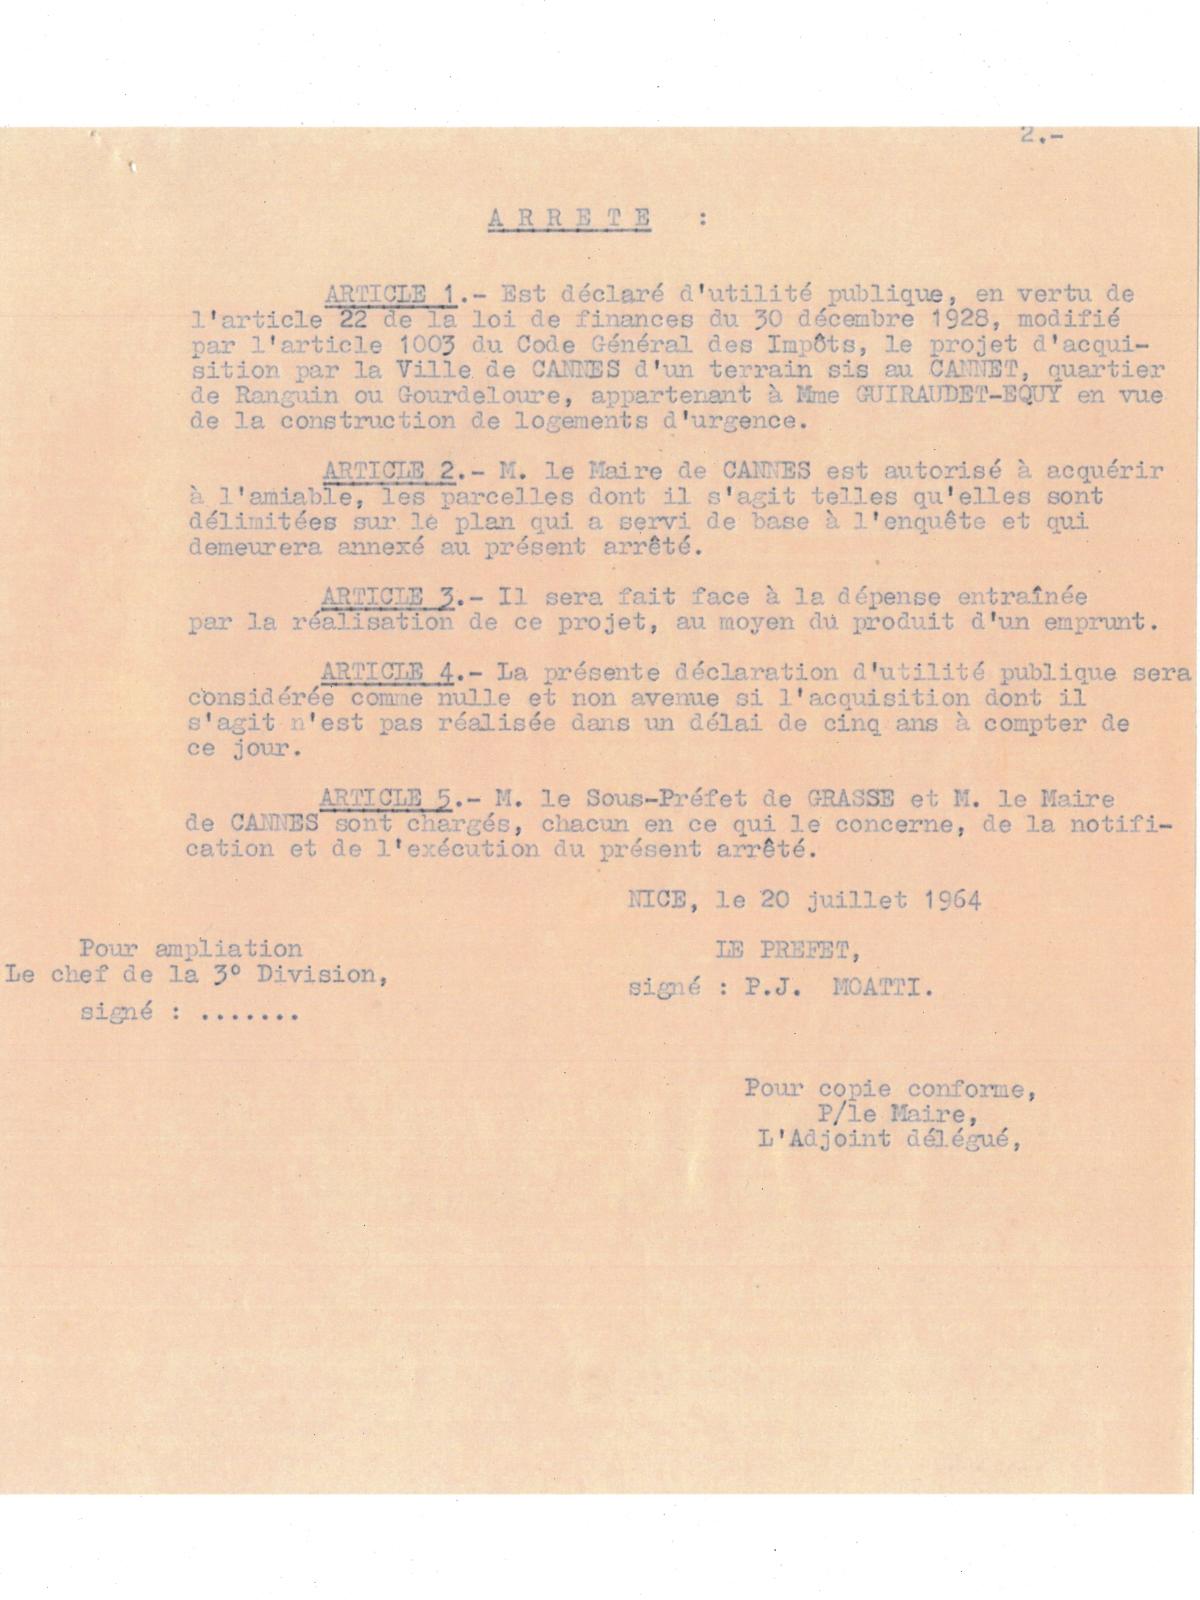 Illustration 2, p. 2 : préfecture des Alpes-Maritimes, arrêté portant déclaration d’utilité publique, 20 juillet 1964 (Archives de Cannes, 22W238)